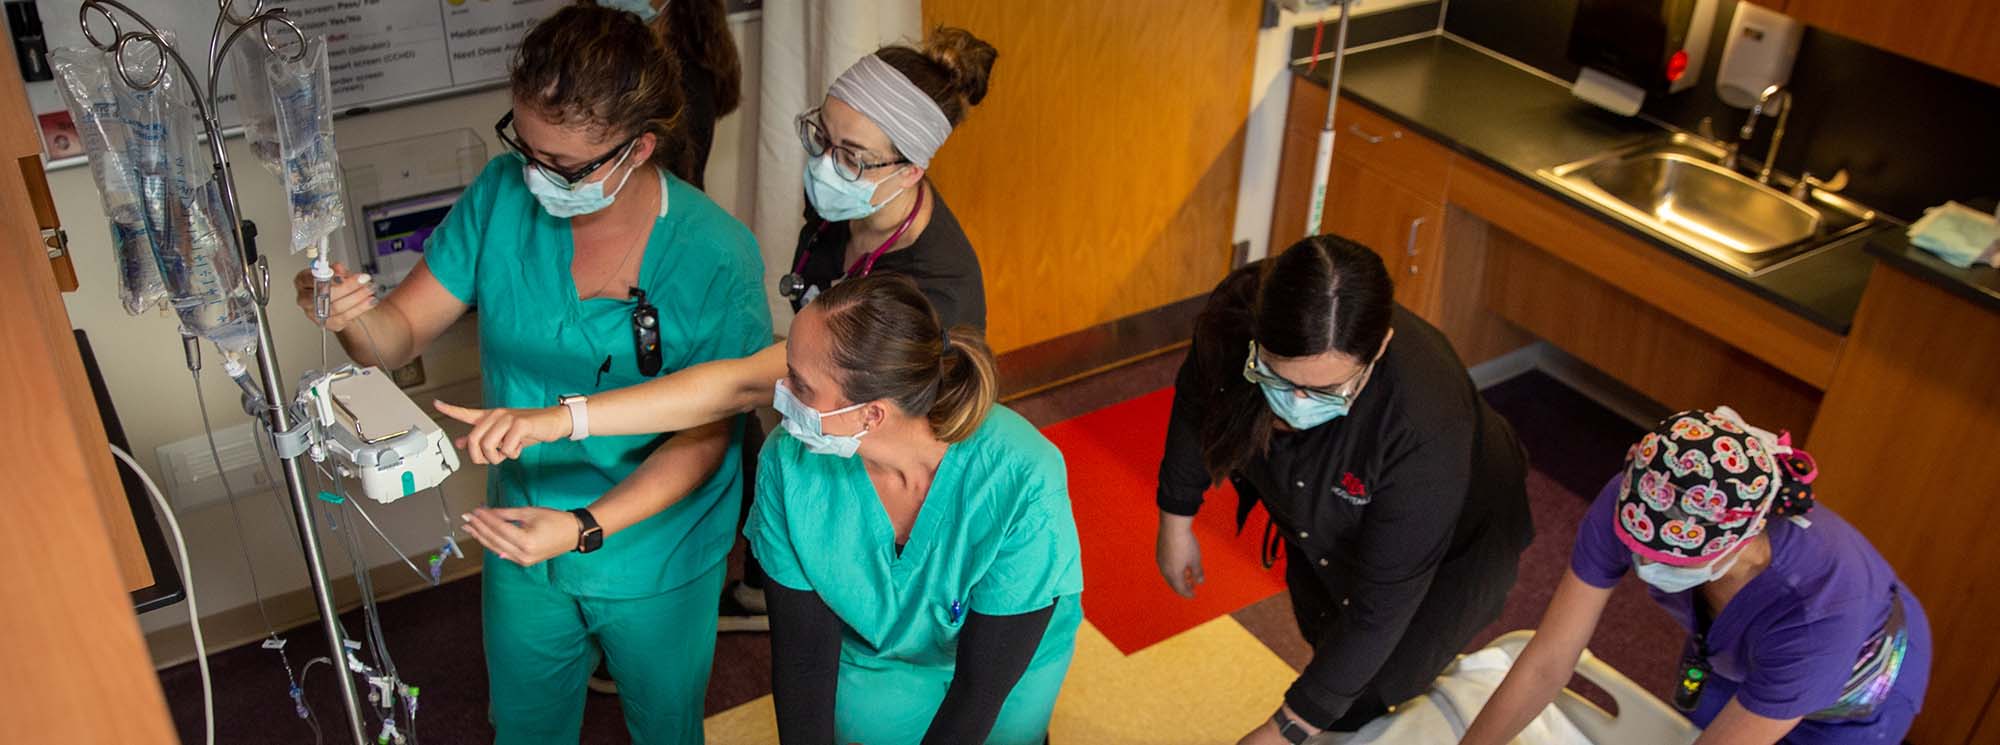 Estudantes de enfermagem trabalhando juntos em um paciente